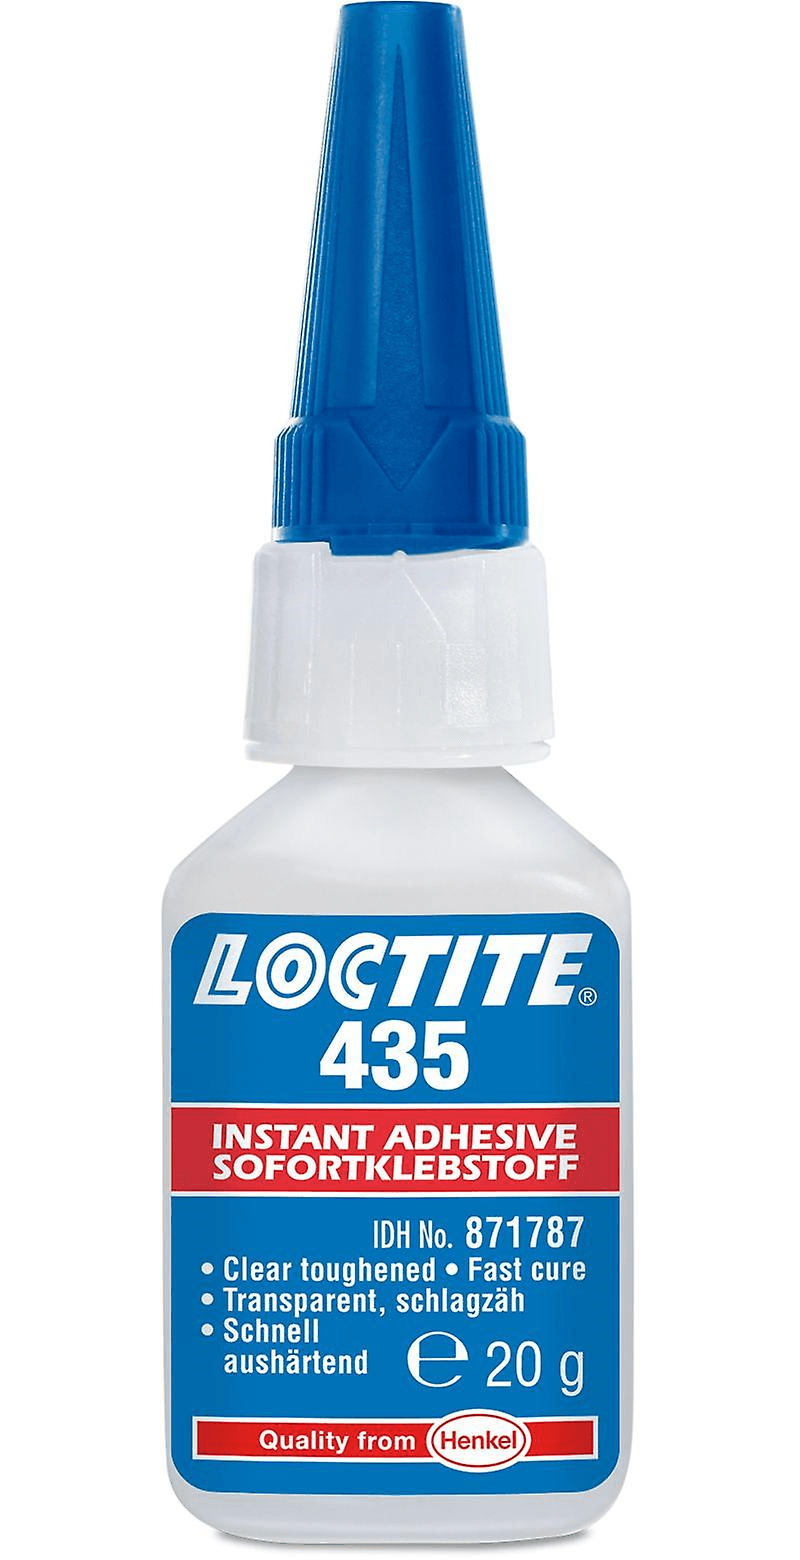 LOCTITE 435 20G (1924301) Повышенной прочности для пористых поверхностей, химо- водостойкость, прозрачный